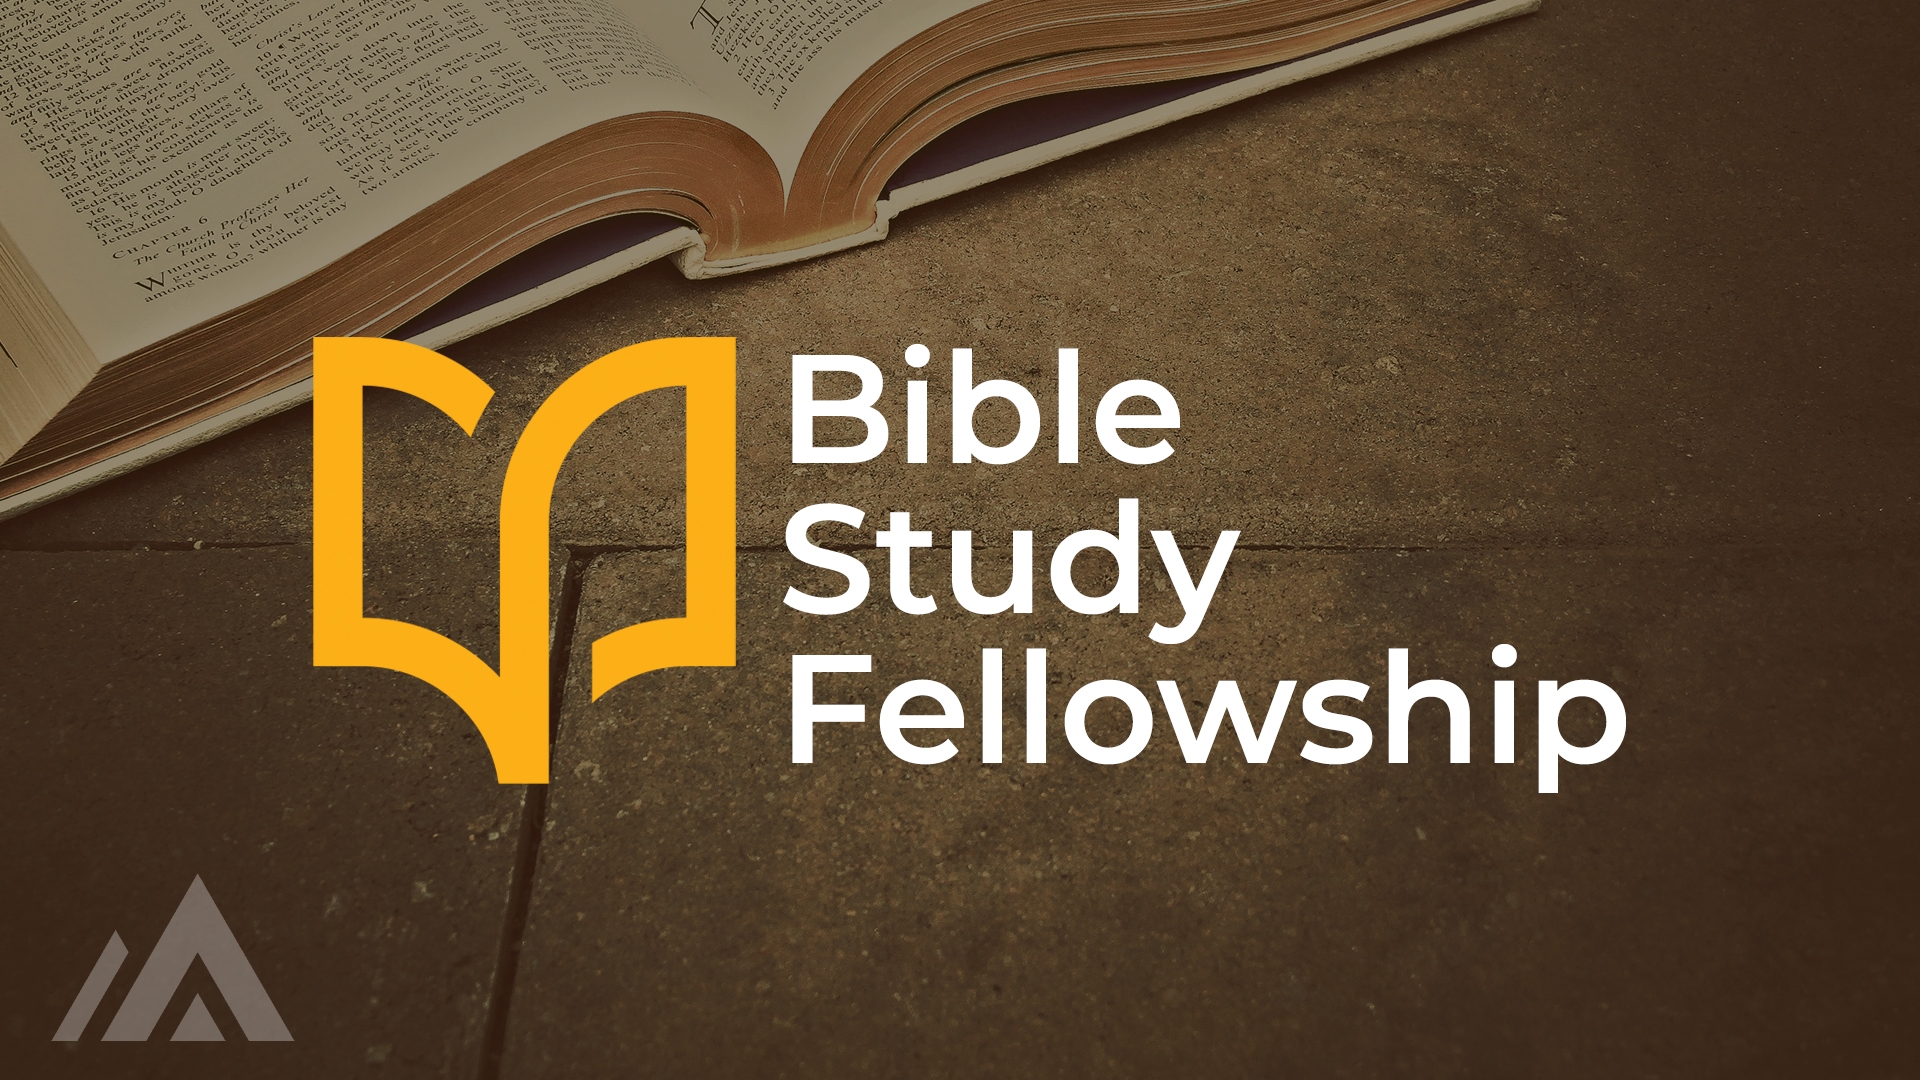 Bible Study Fellowship Name Tag Template